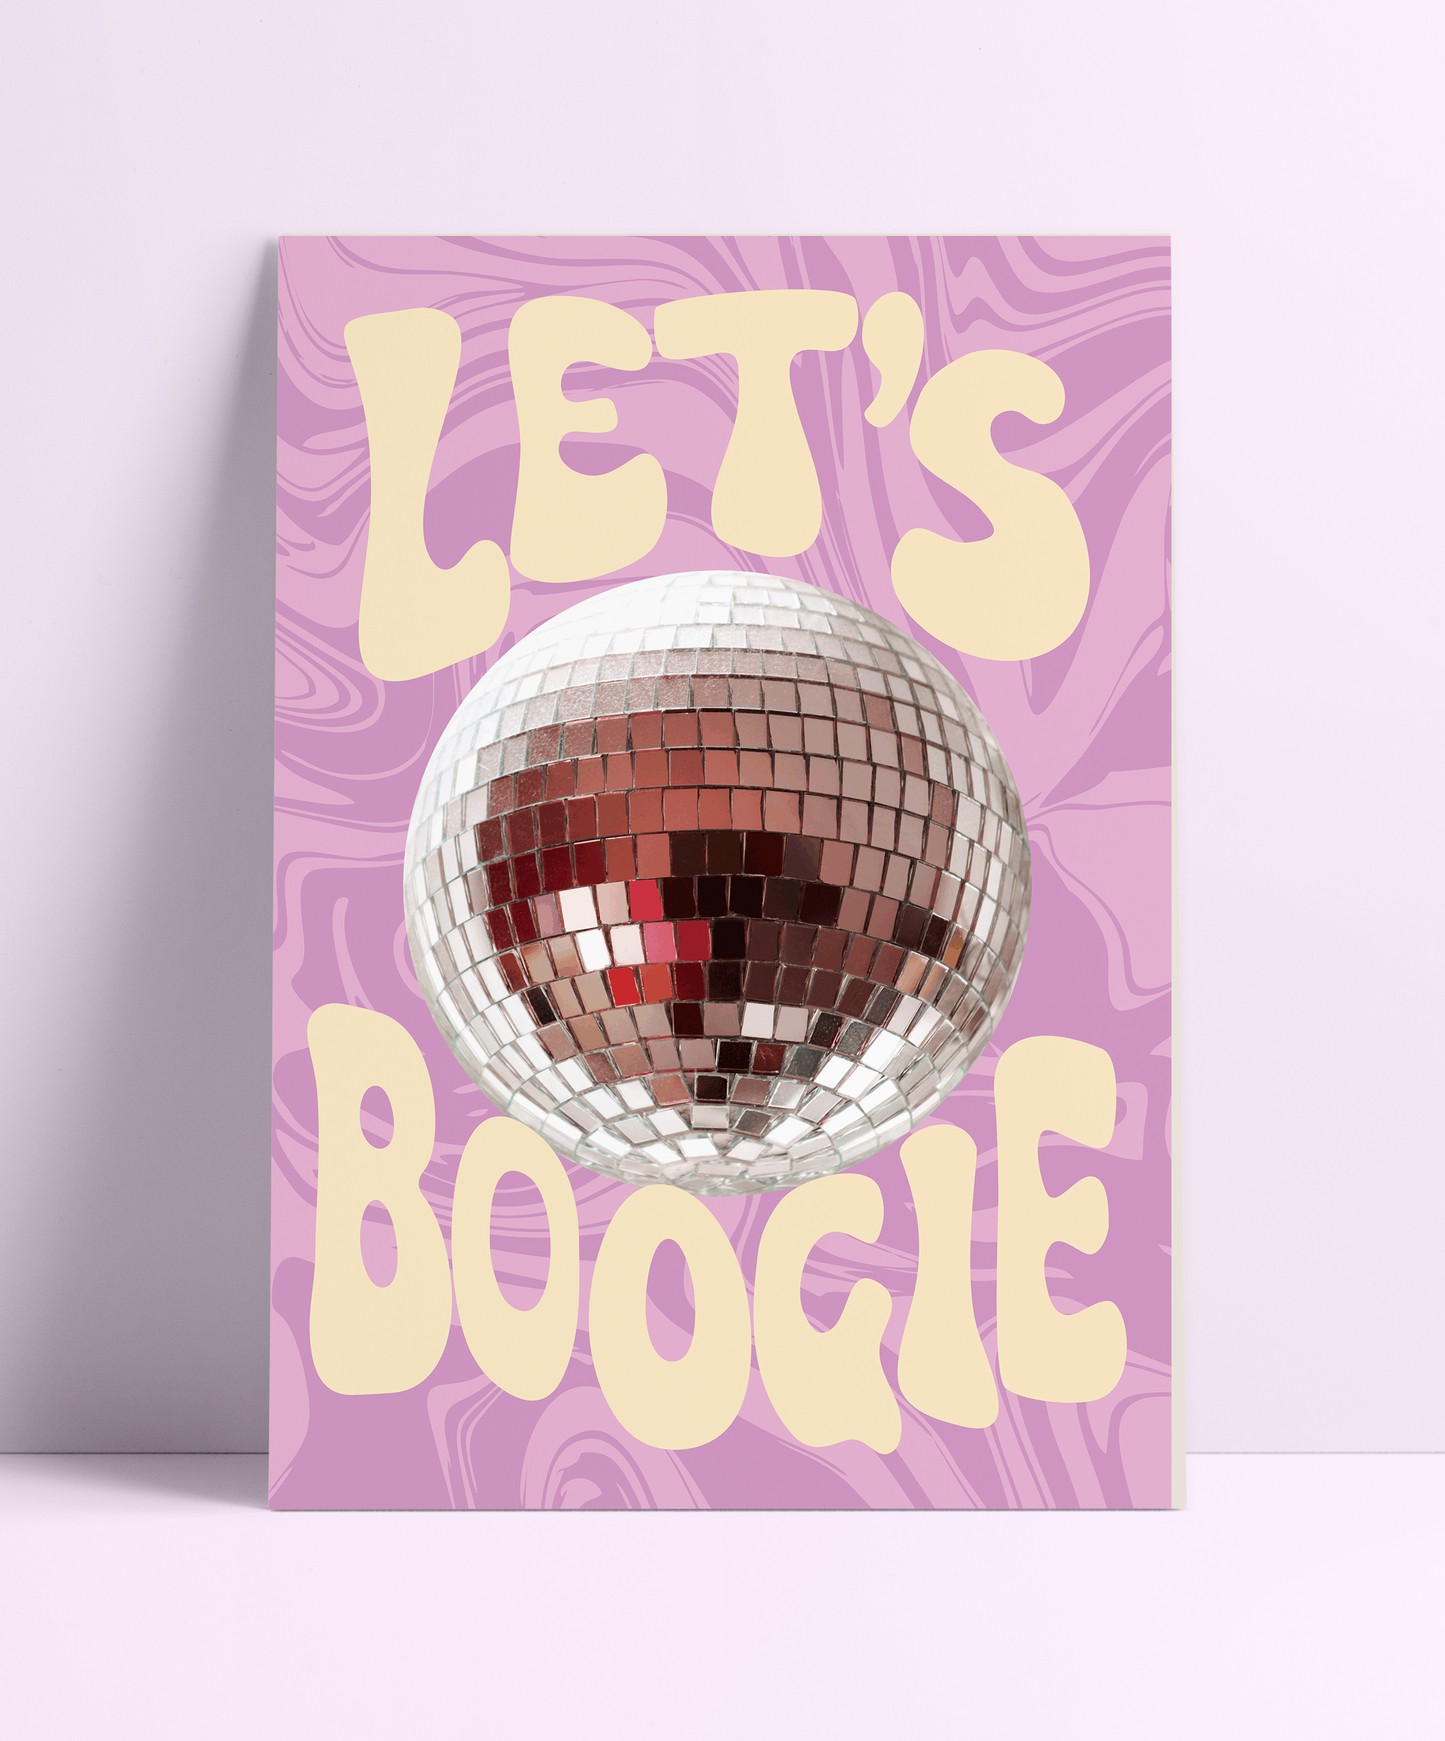 Let's Boogie - PrintedWeird